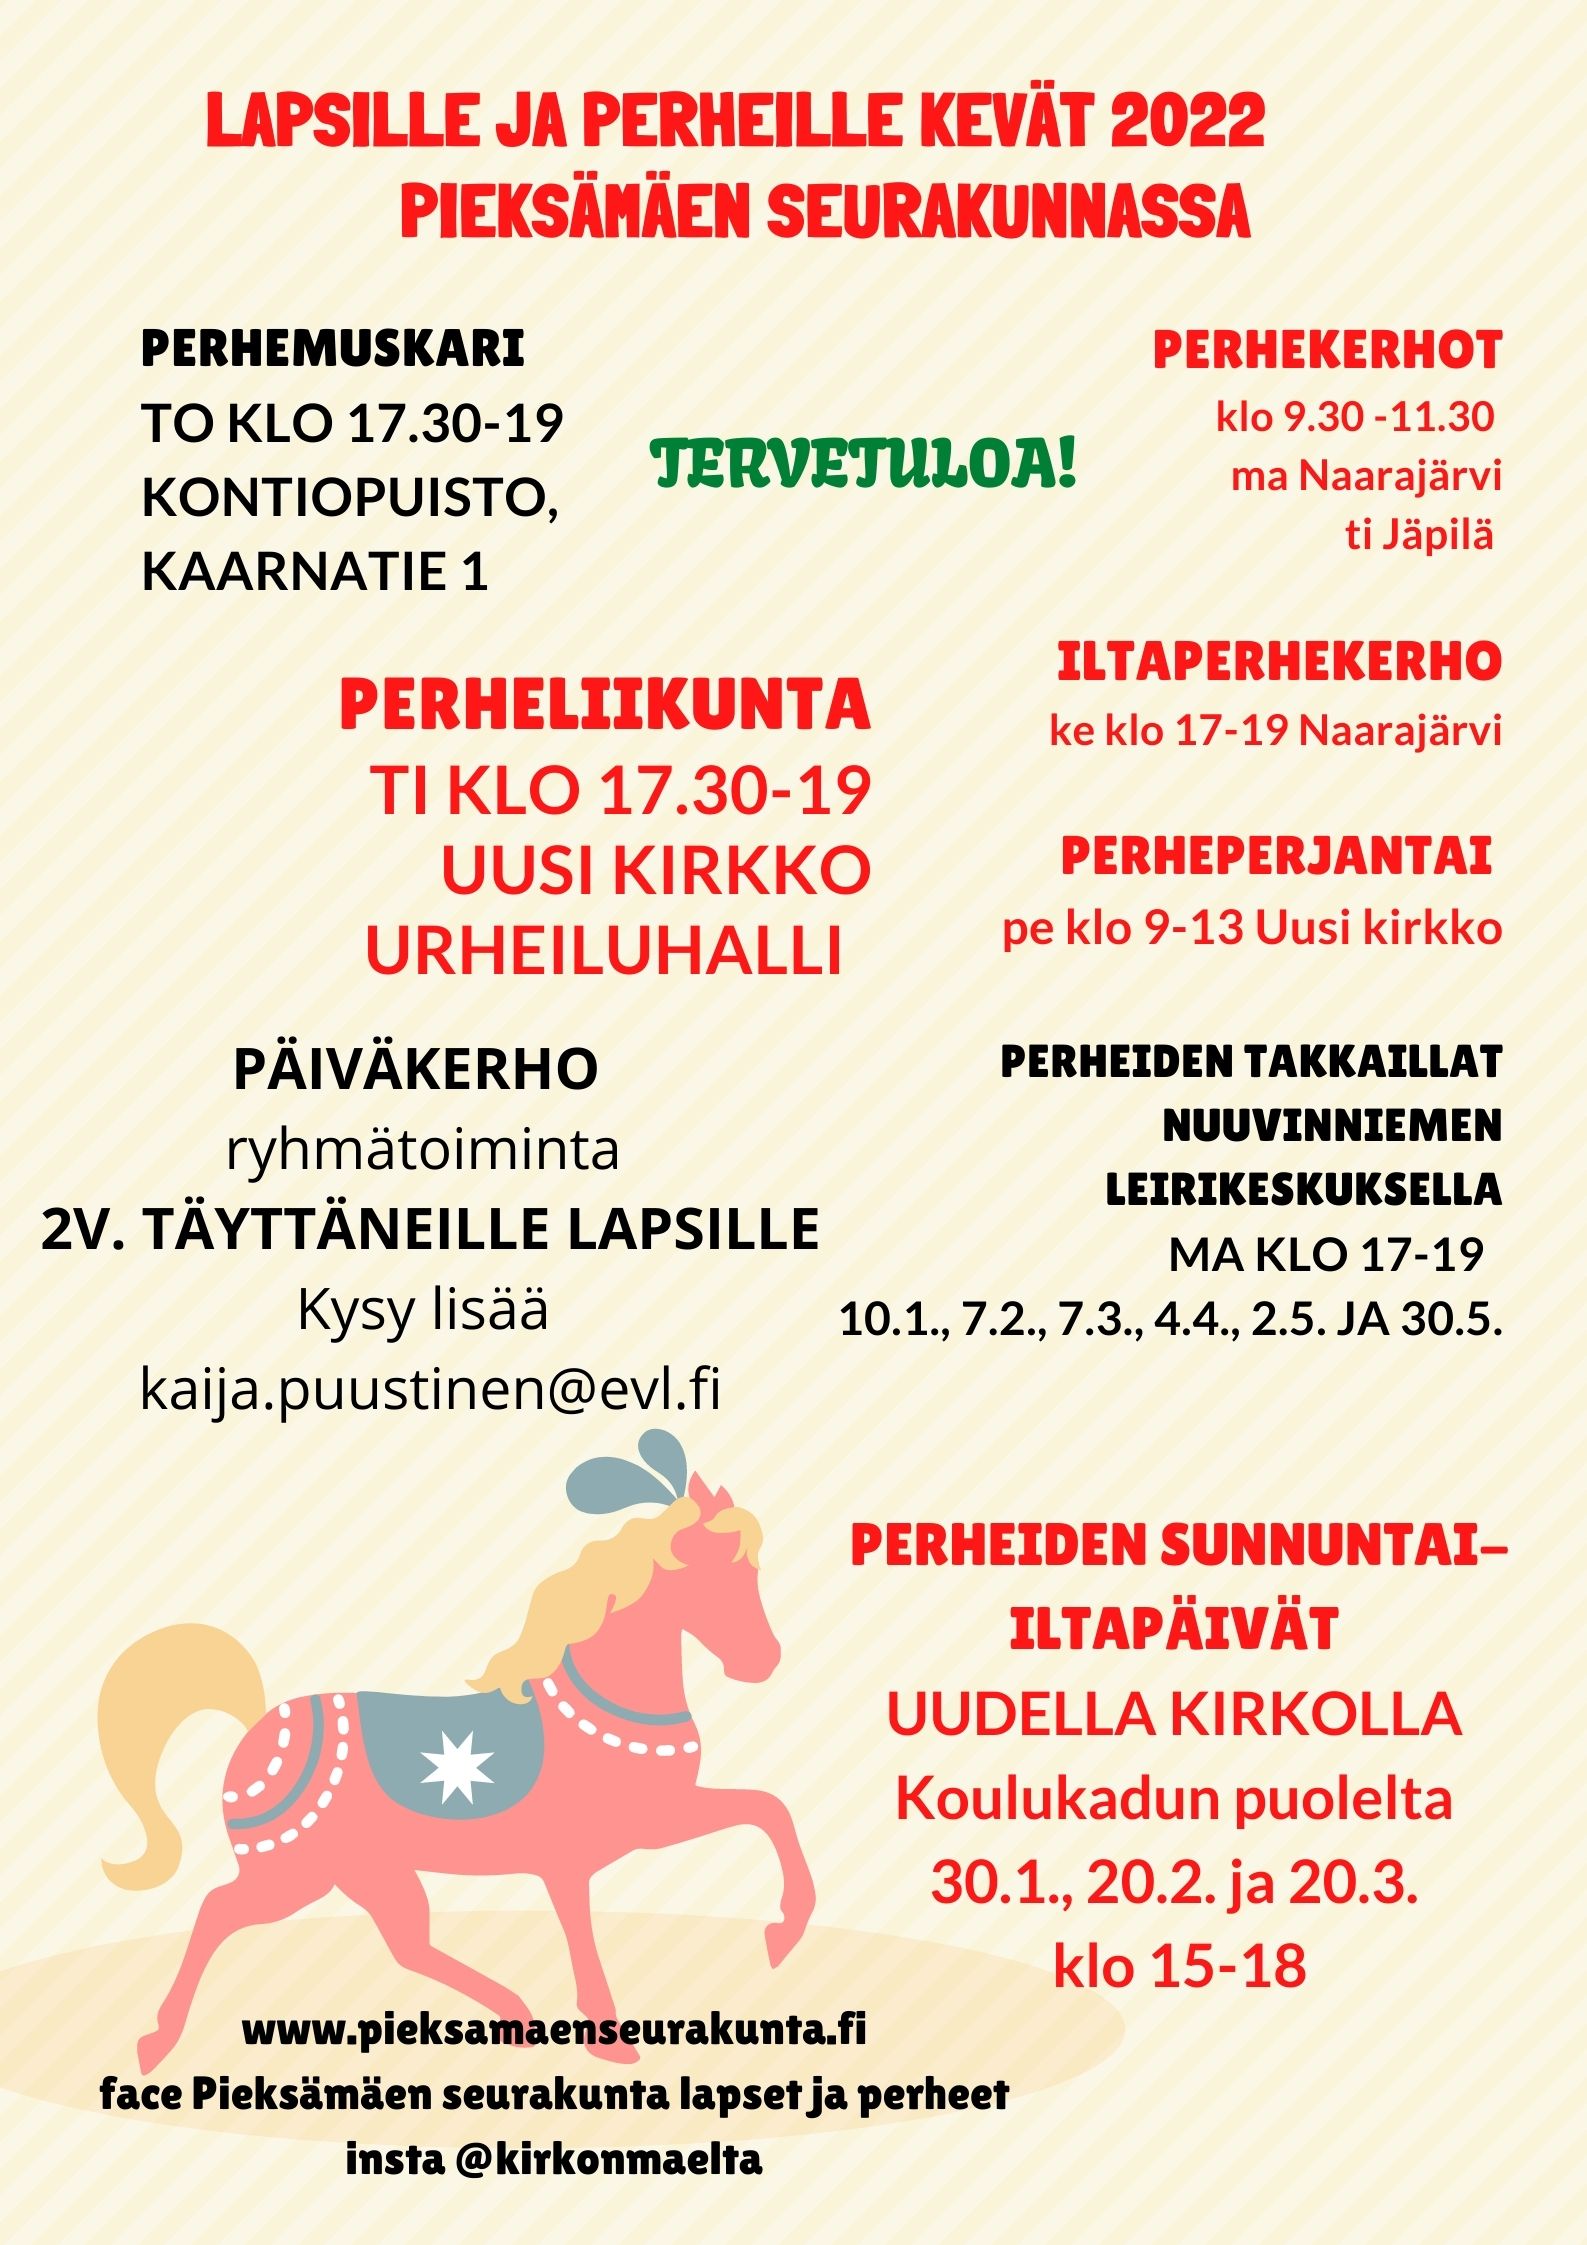 Perhekerhoja   ma Naarajärvi, ti Jäppilä, ke iltaperhekerho Naarajärvi, perheperjantai klo 9-13 Uusi kirkko